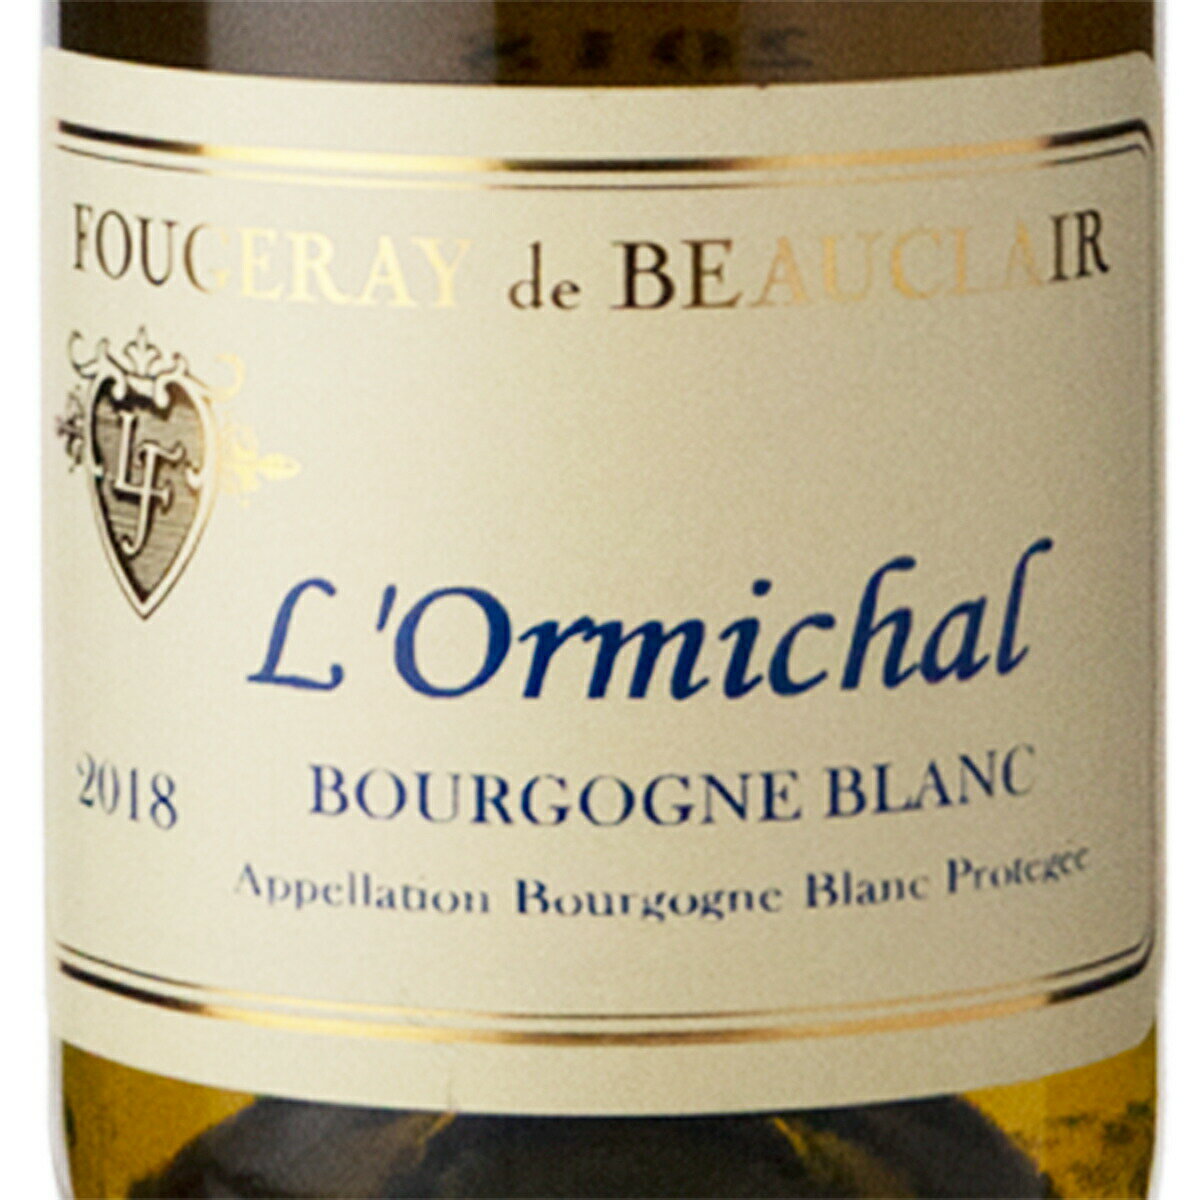 フジュレイ ド ボークレール ブルゴーニュ ロルミシャル シャルドネ 2018 750ml 白ワイン フランス (a03-5708)